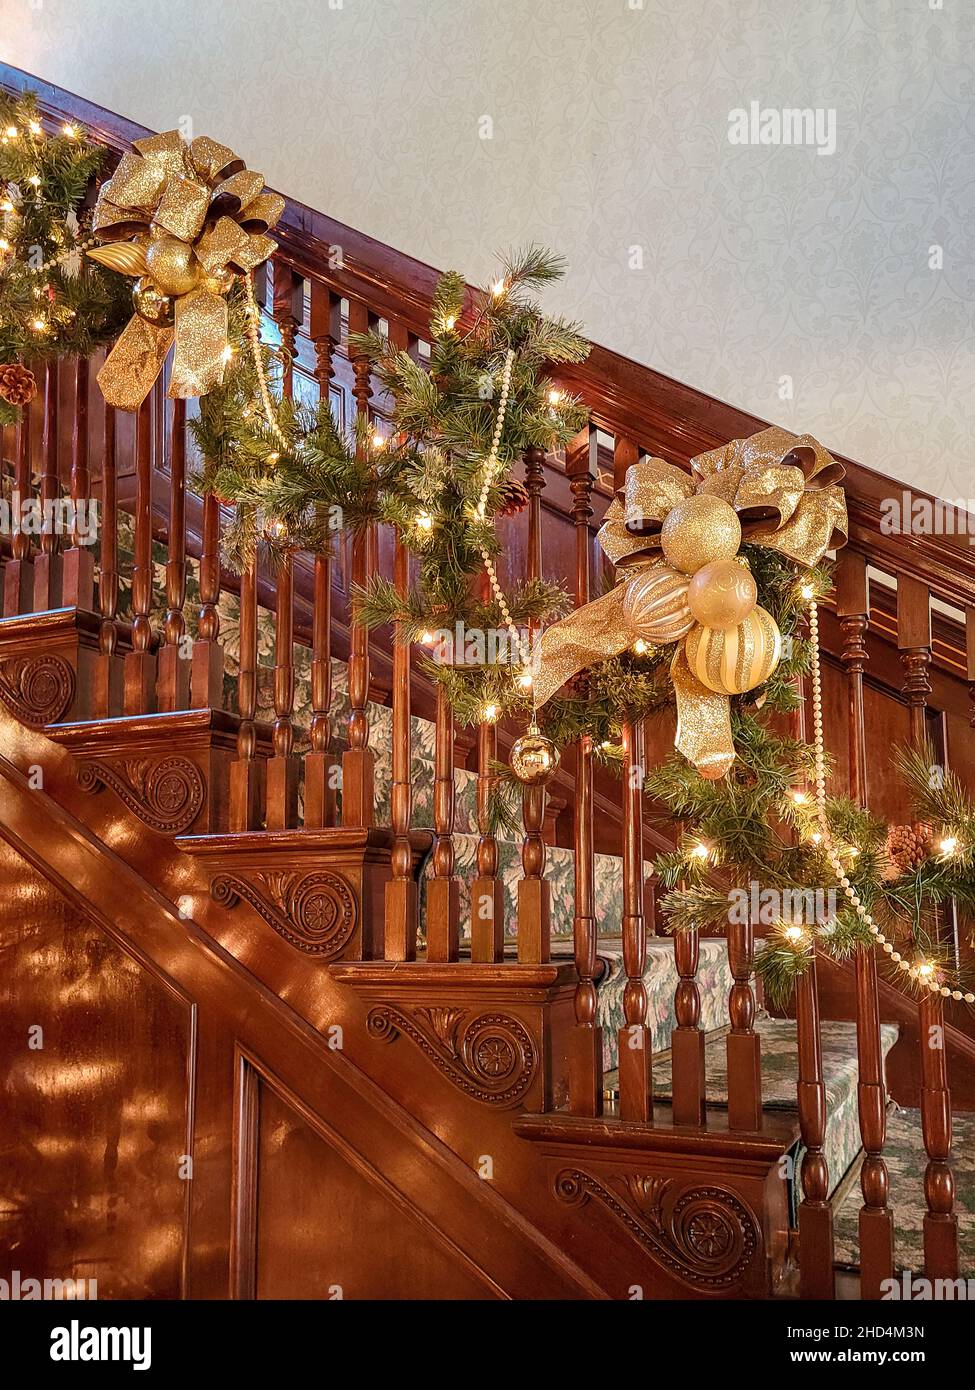 Home Innenraum Weihnachtslichter und ausgefallene Golddekorationen auf einer Holztreppe Stockfoto